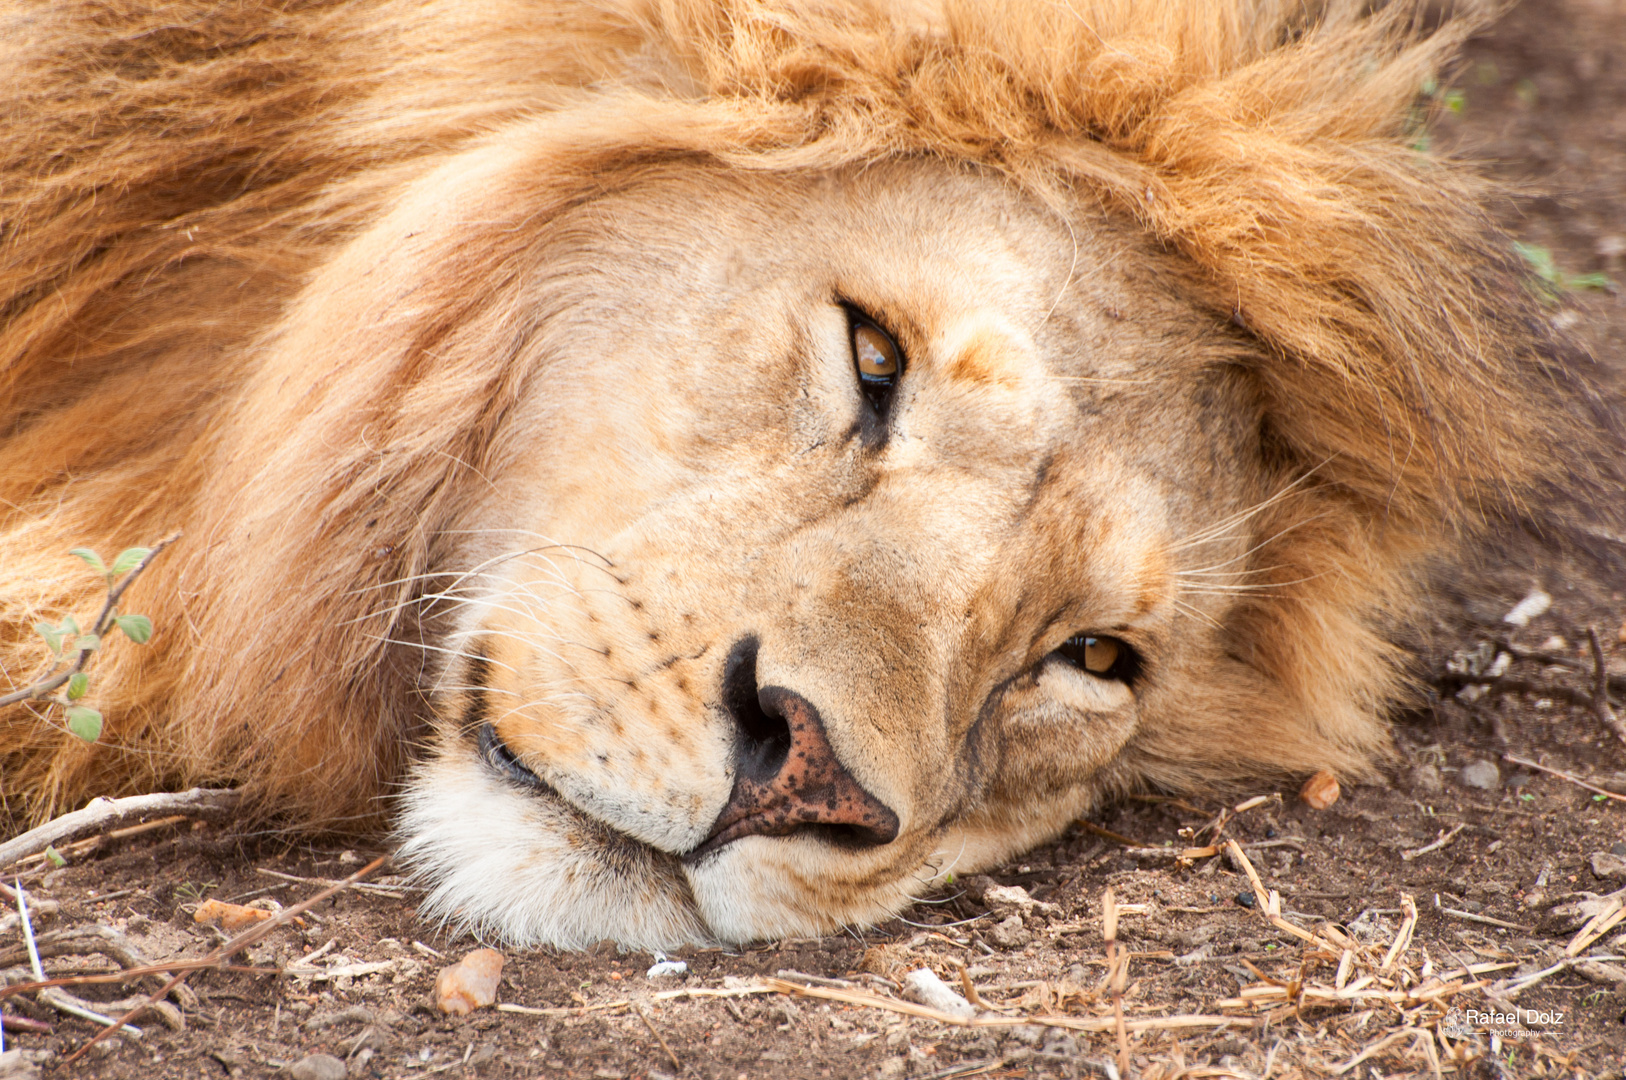 El Rey descansando Imagen & Foto | animales, animales salvajes